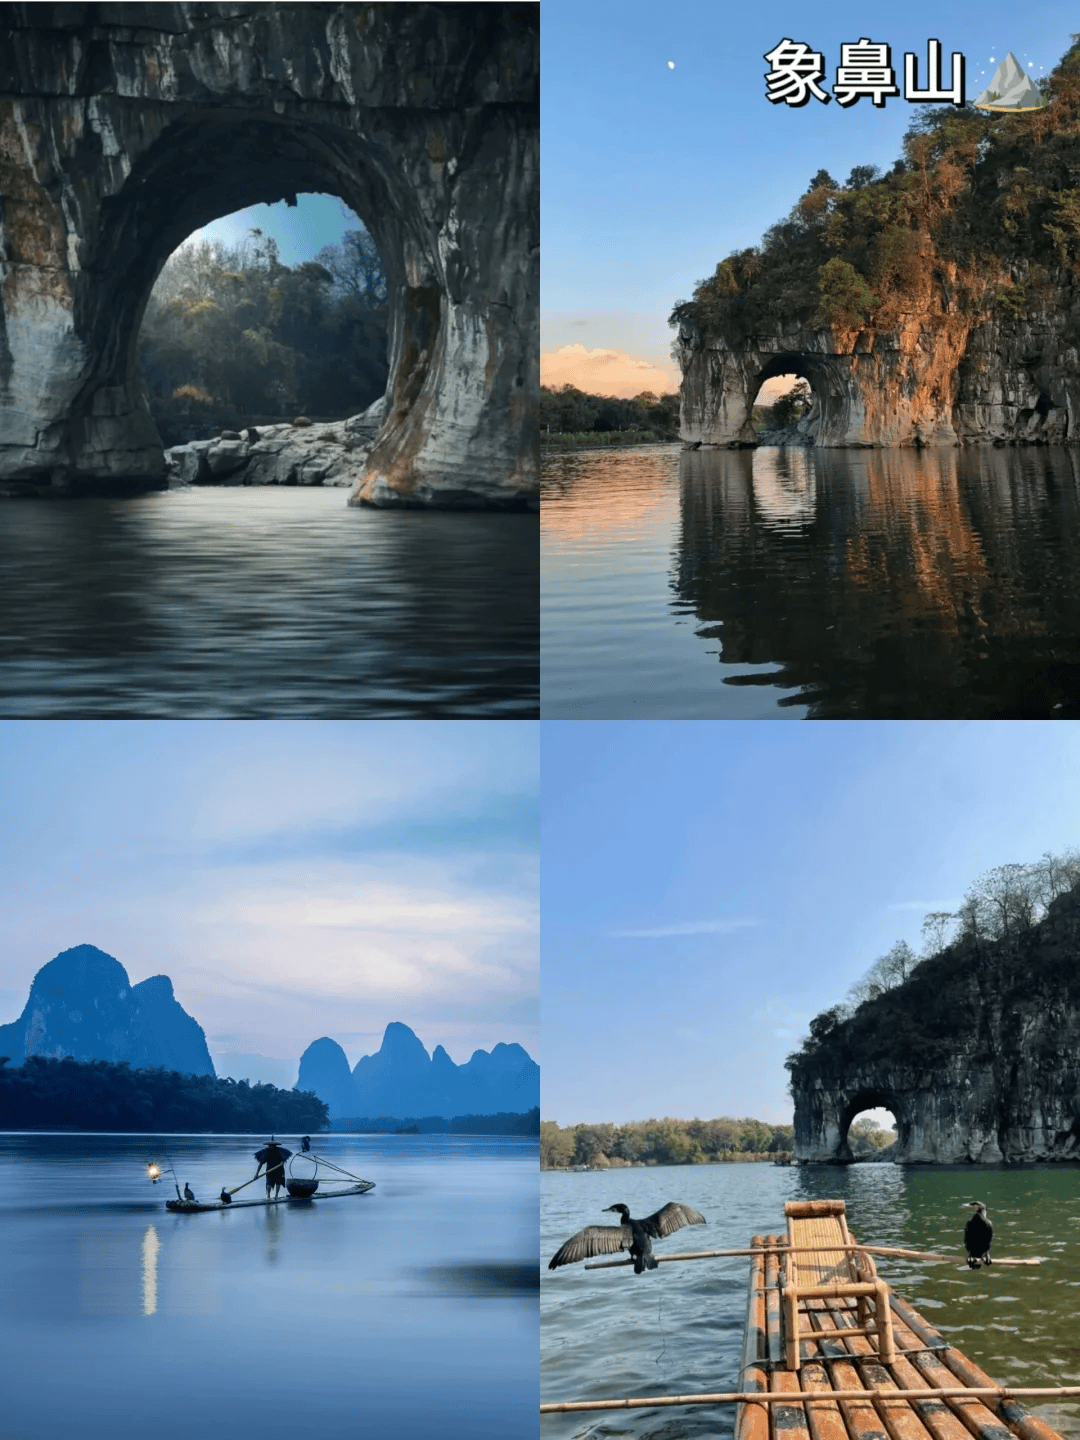 广西桂林景点推荐桂林十大旅游景点第一次桂林旅游必去的景点